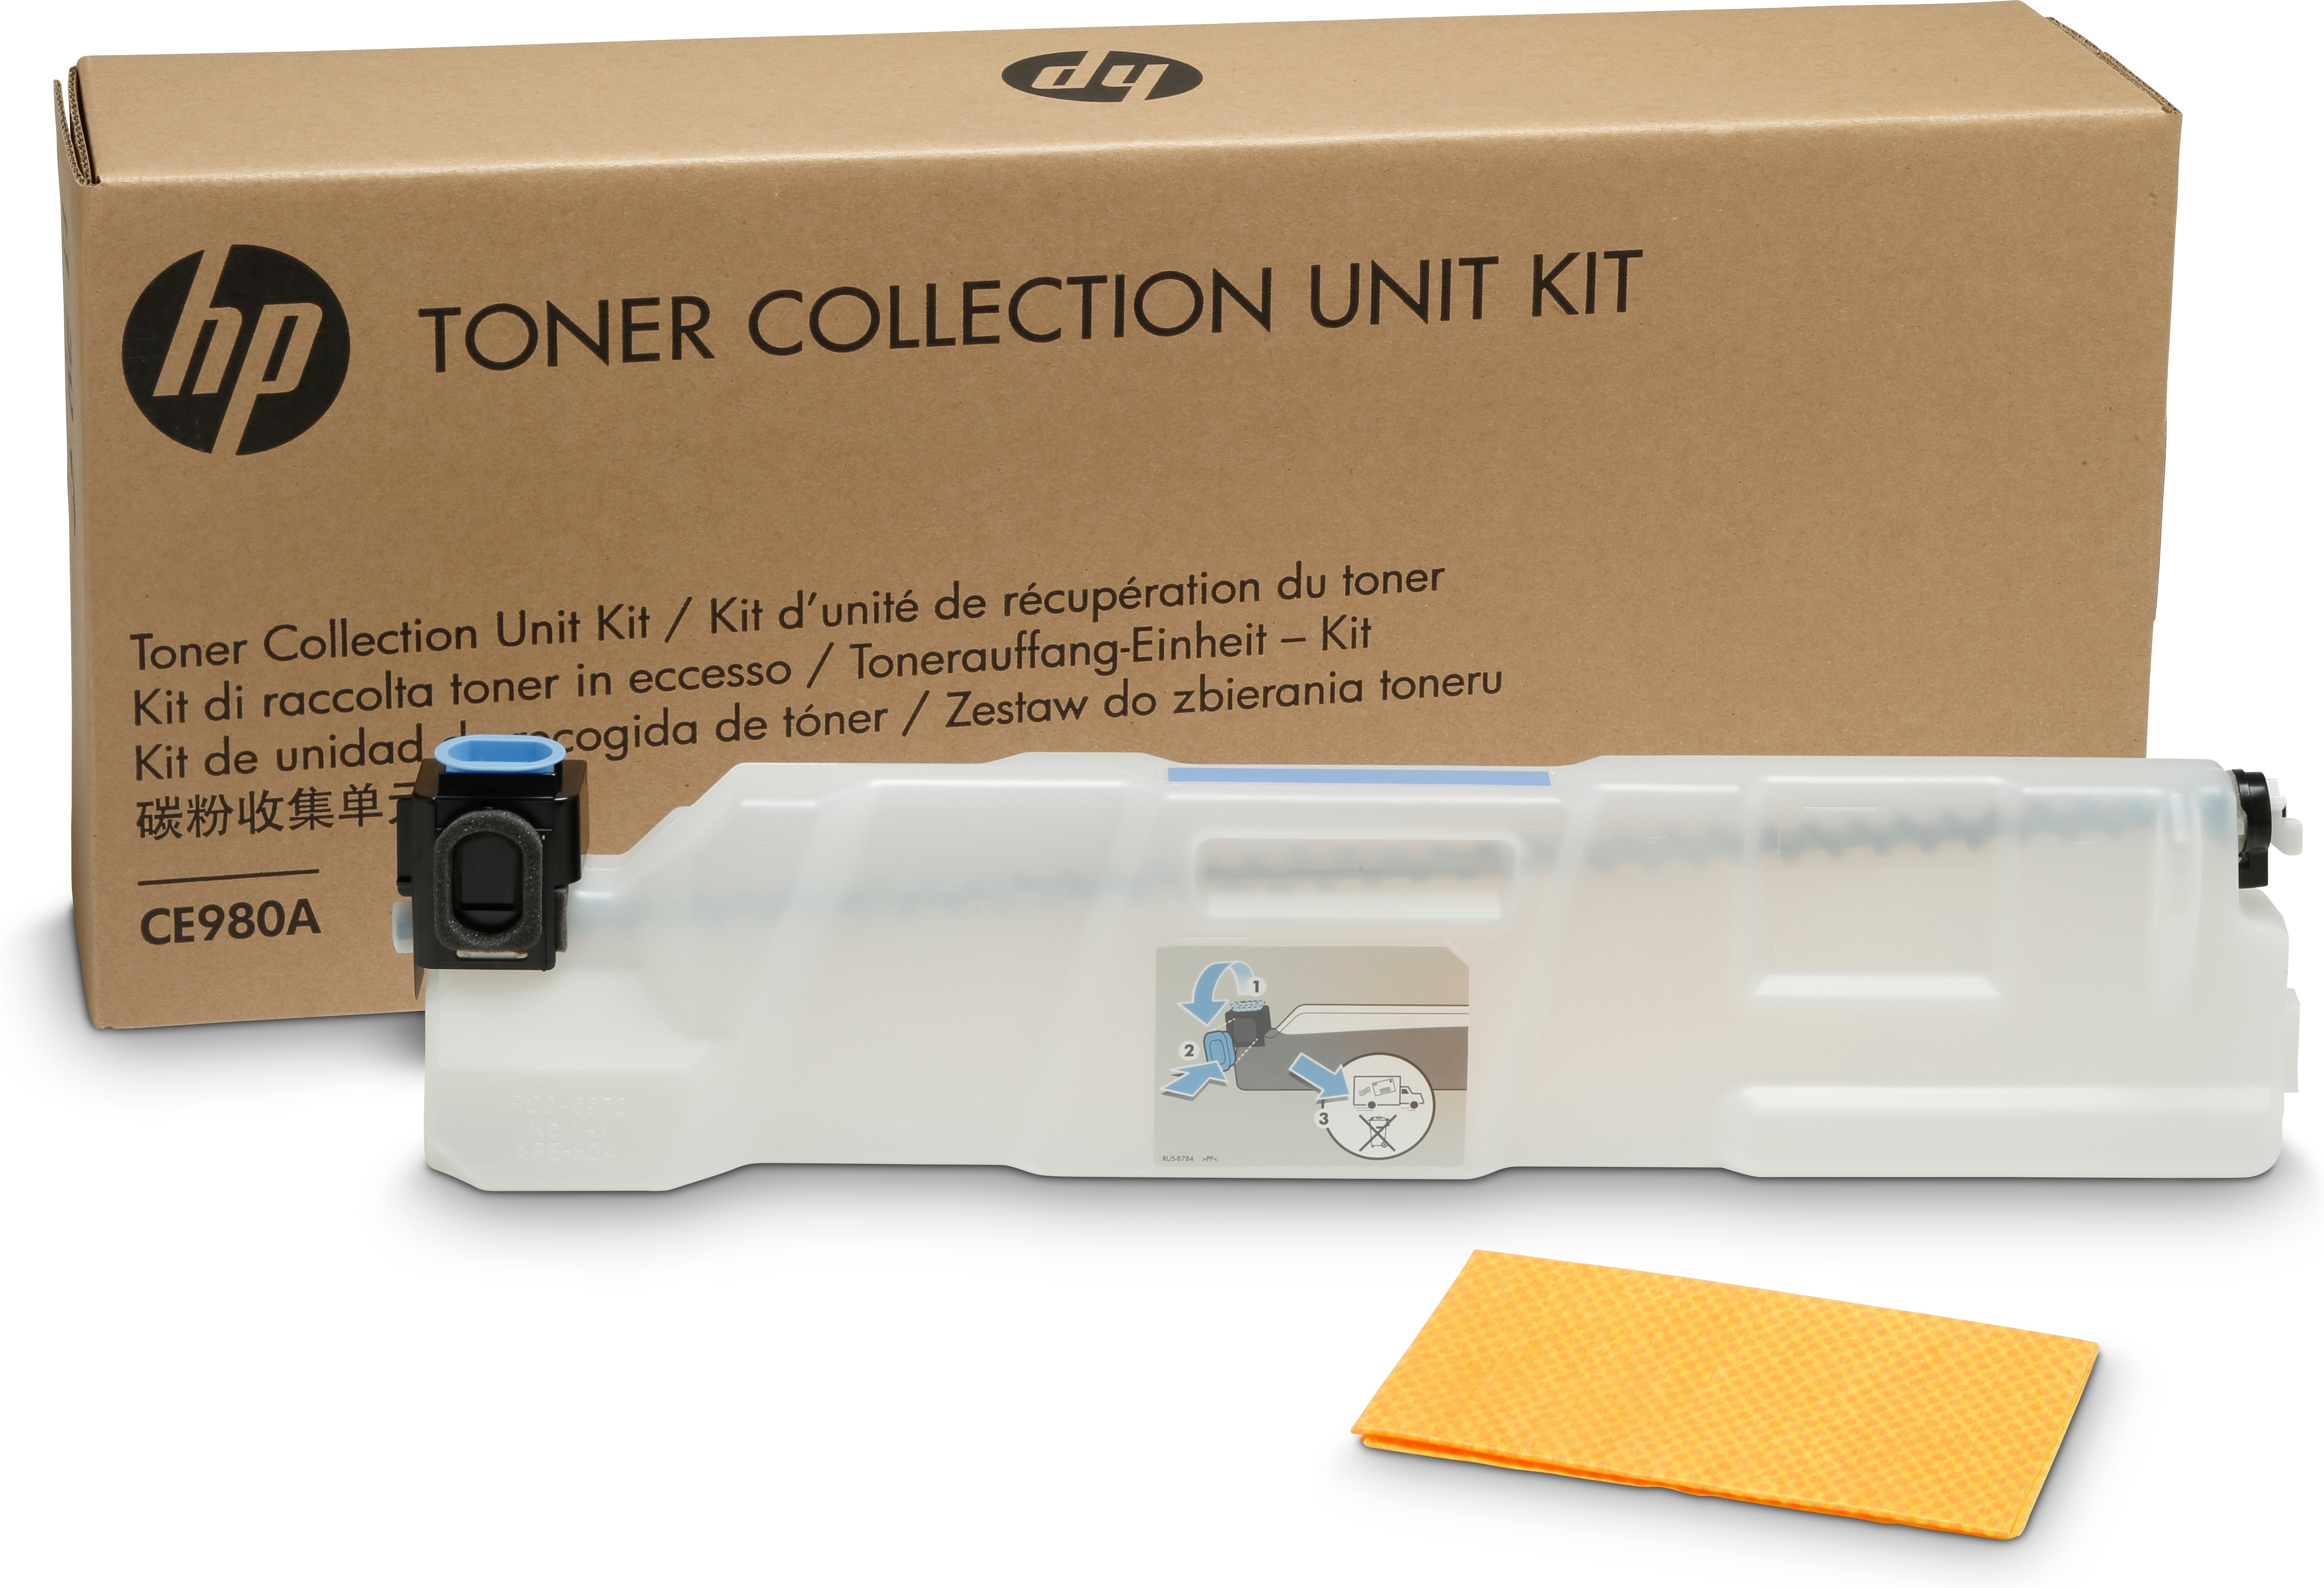 HP Color LaserJet CP5525 Toner Kit